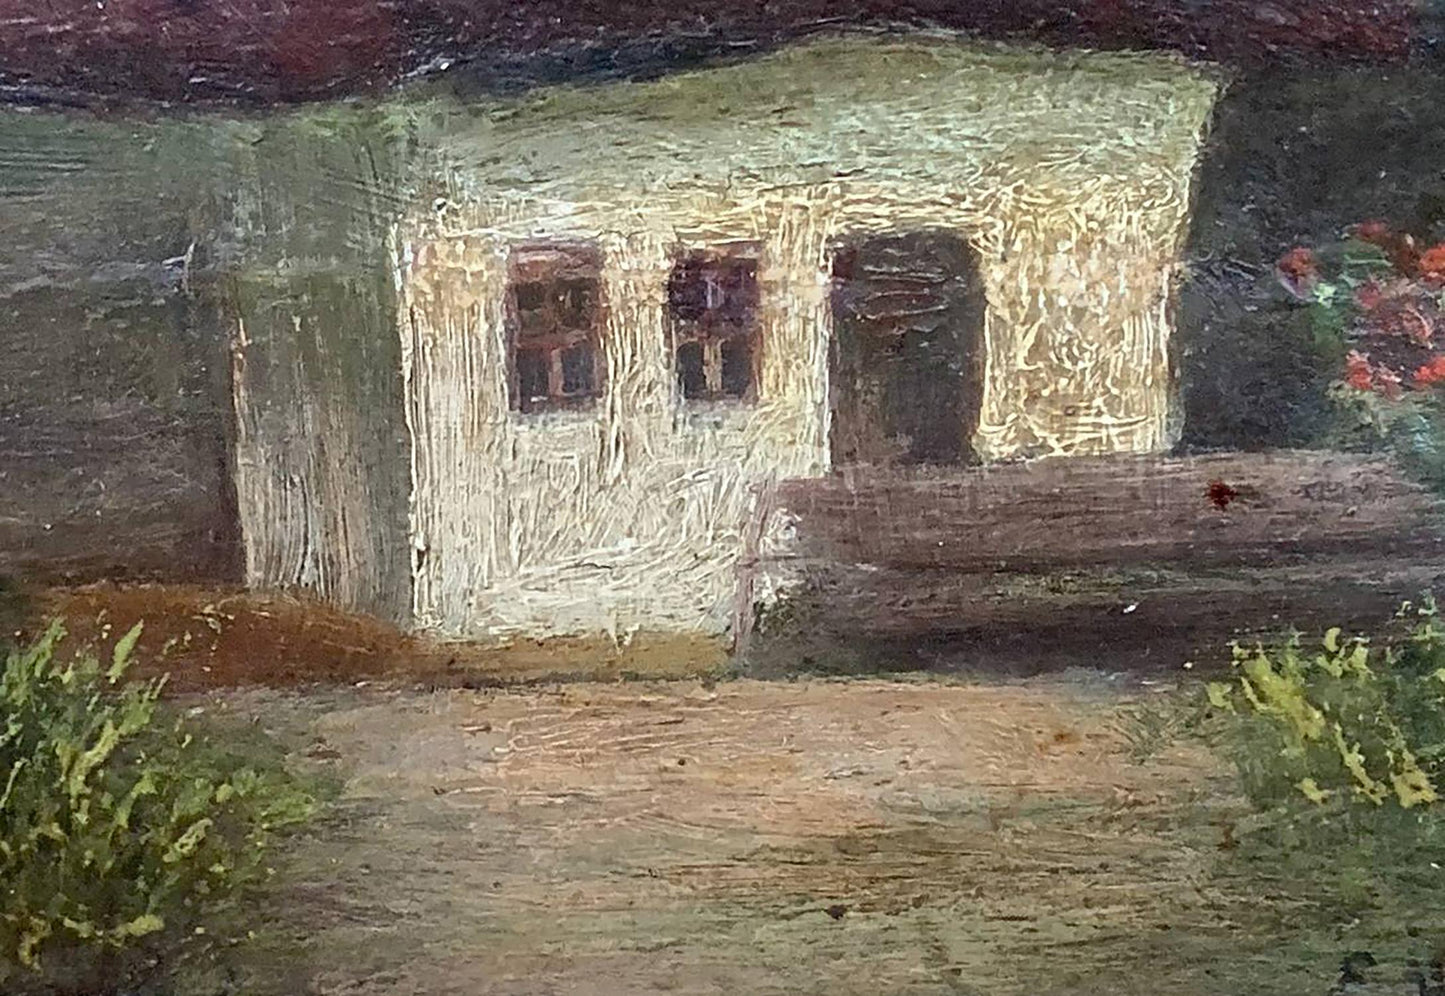 Oil painting Lonely house Vzheshch Yevhen Ksaveriyovych